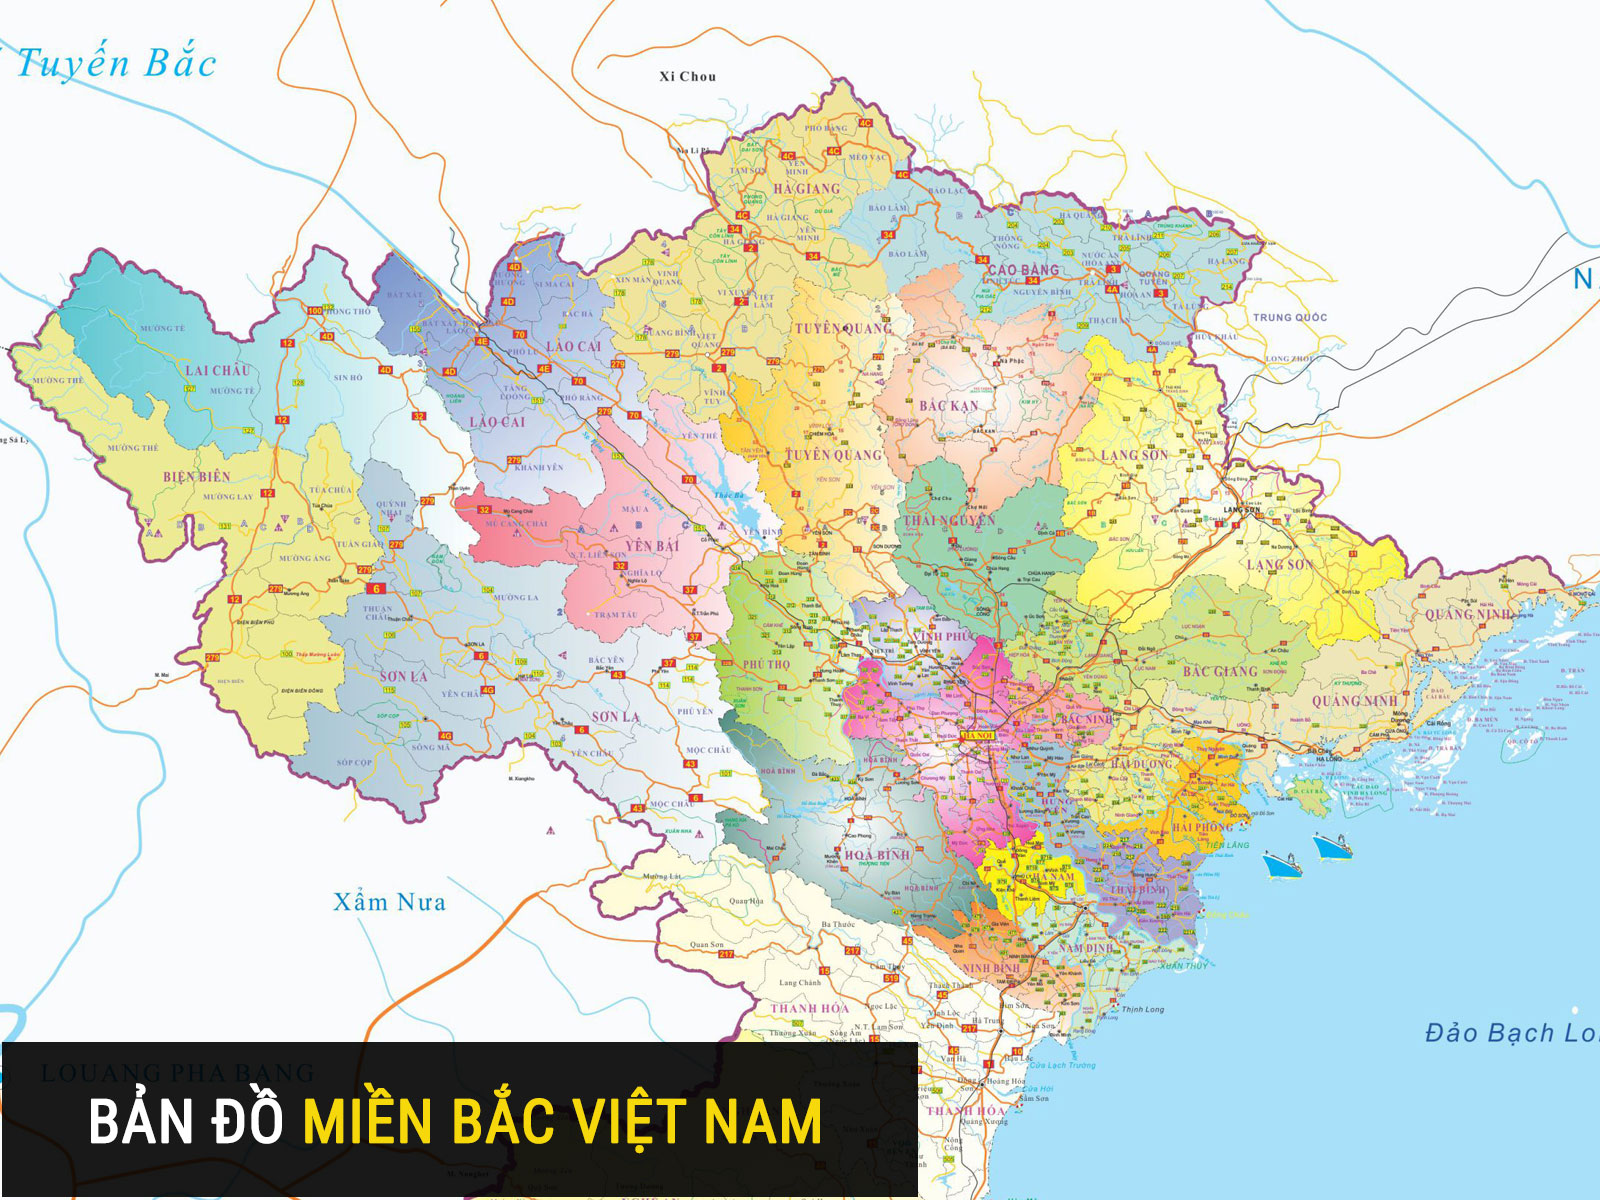 Bản đồ hành chính miền Bắc khổ lớn phóng to 2024: Bản đồ hành chính miền Bắc Việt Nam 2024 được cập nhật với độ phân giải cao hơn và thông tin chi tiết hơn về các tỉnh thành. Bạn có thể khám phá những địa điểm mới, tìm kiếm thông tin dễ dàng hơn và rèn luyện kiến thức địa lý của mình.